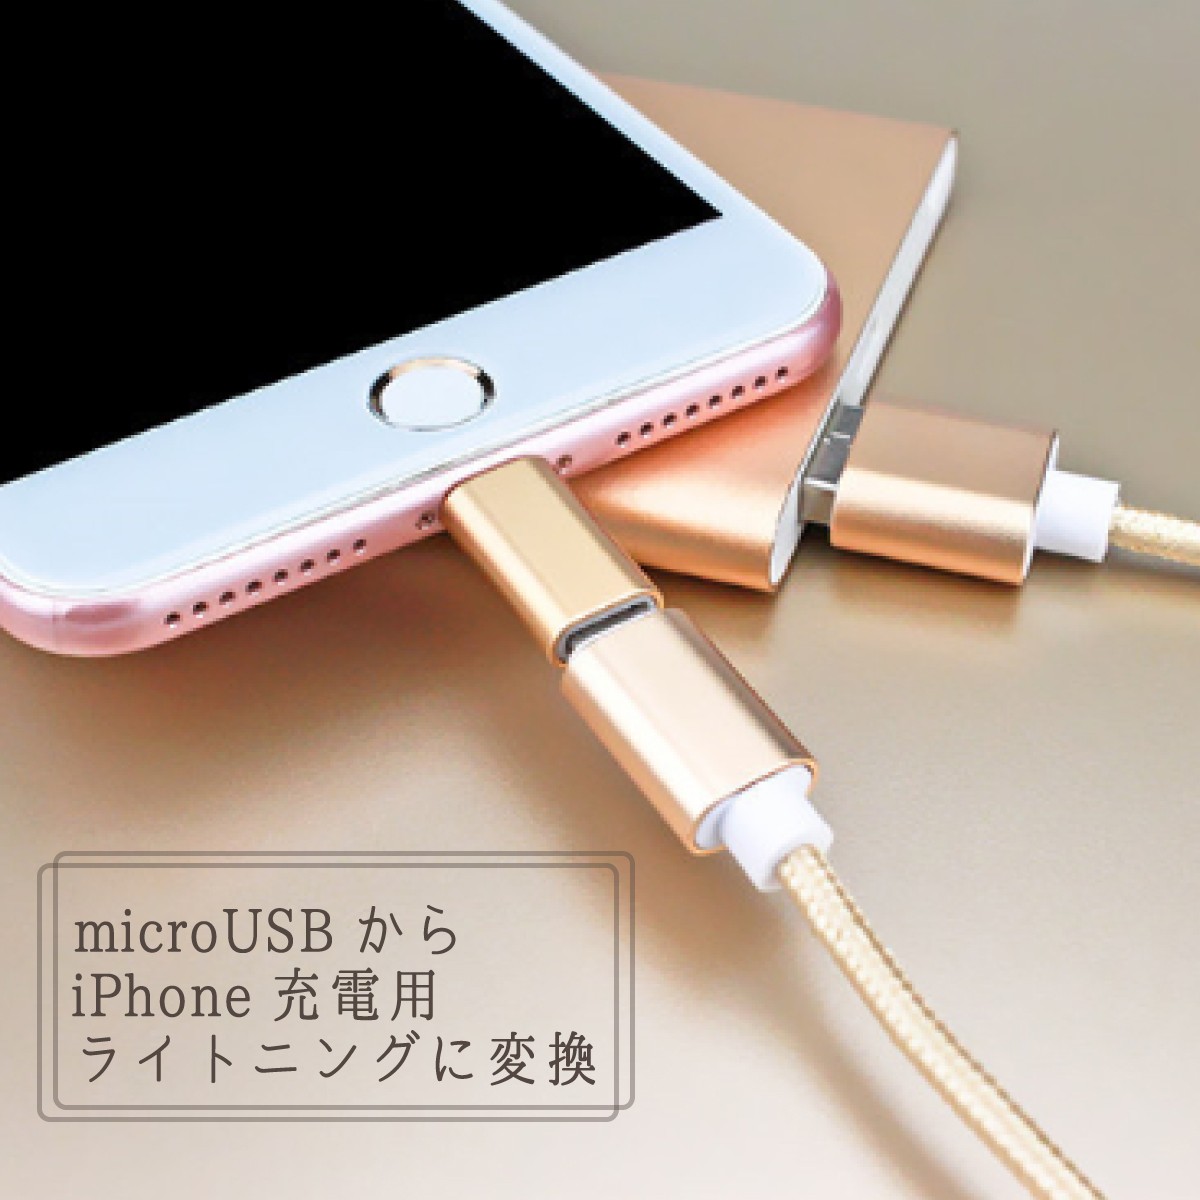 microUSB to lightning подсветка изменение адаптер usb изменение Lightning кабель iPhone слуховай аппарат данные пересылка зарядка USB зарядка 